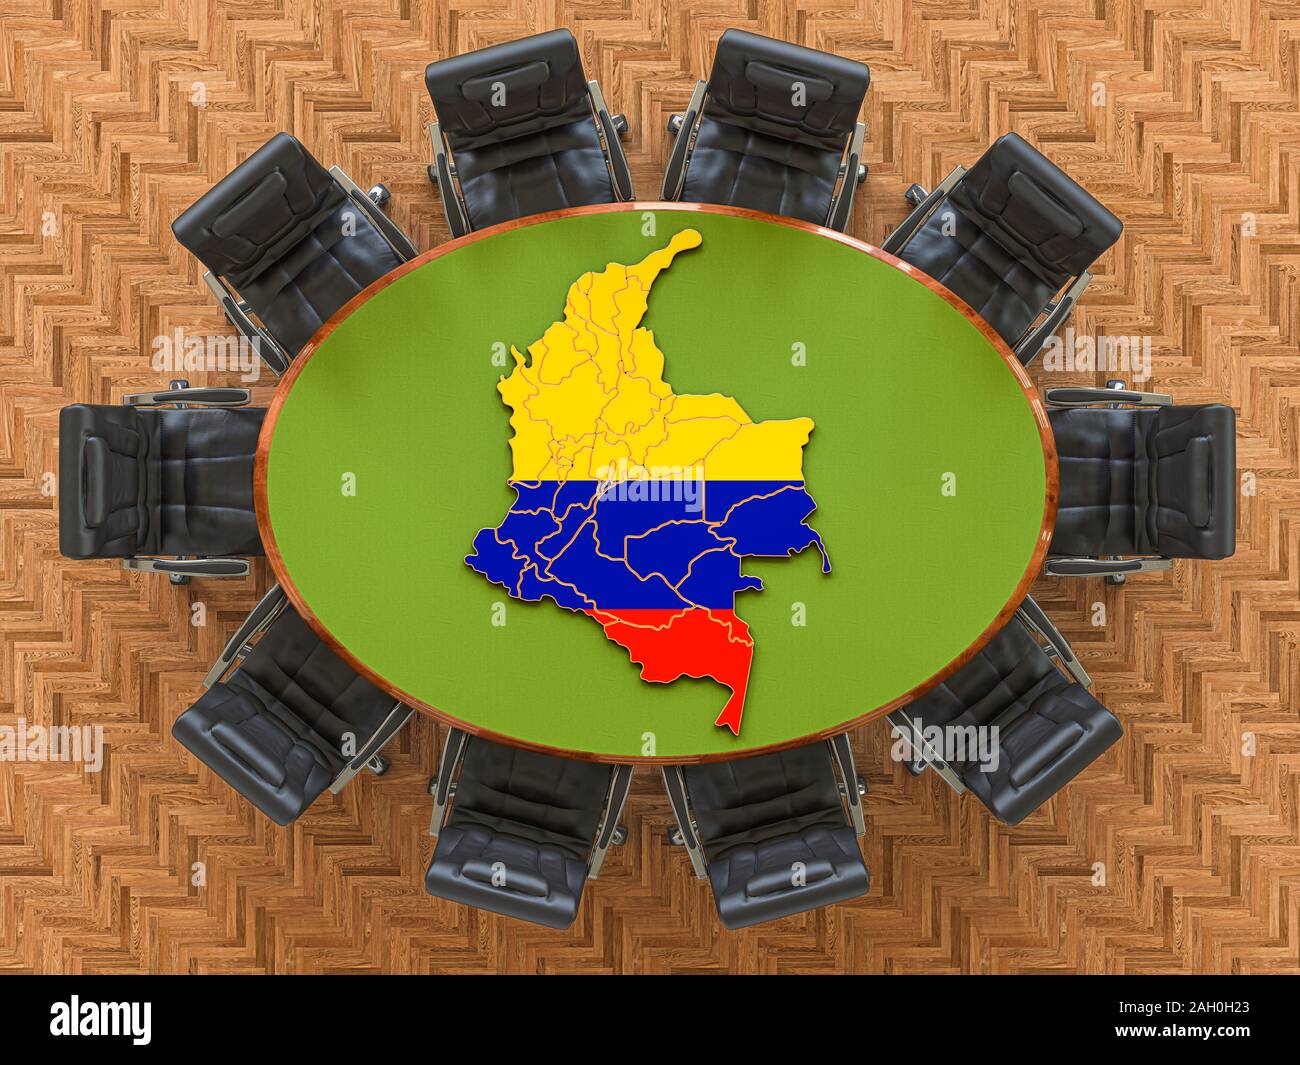 Réunion du gouvernement colombien. Plan de Colombie-Britannique sur la table ronde, 3D Rendering Banque D'Images